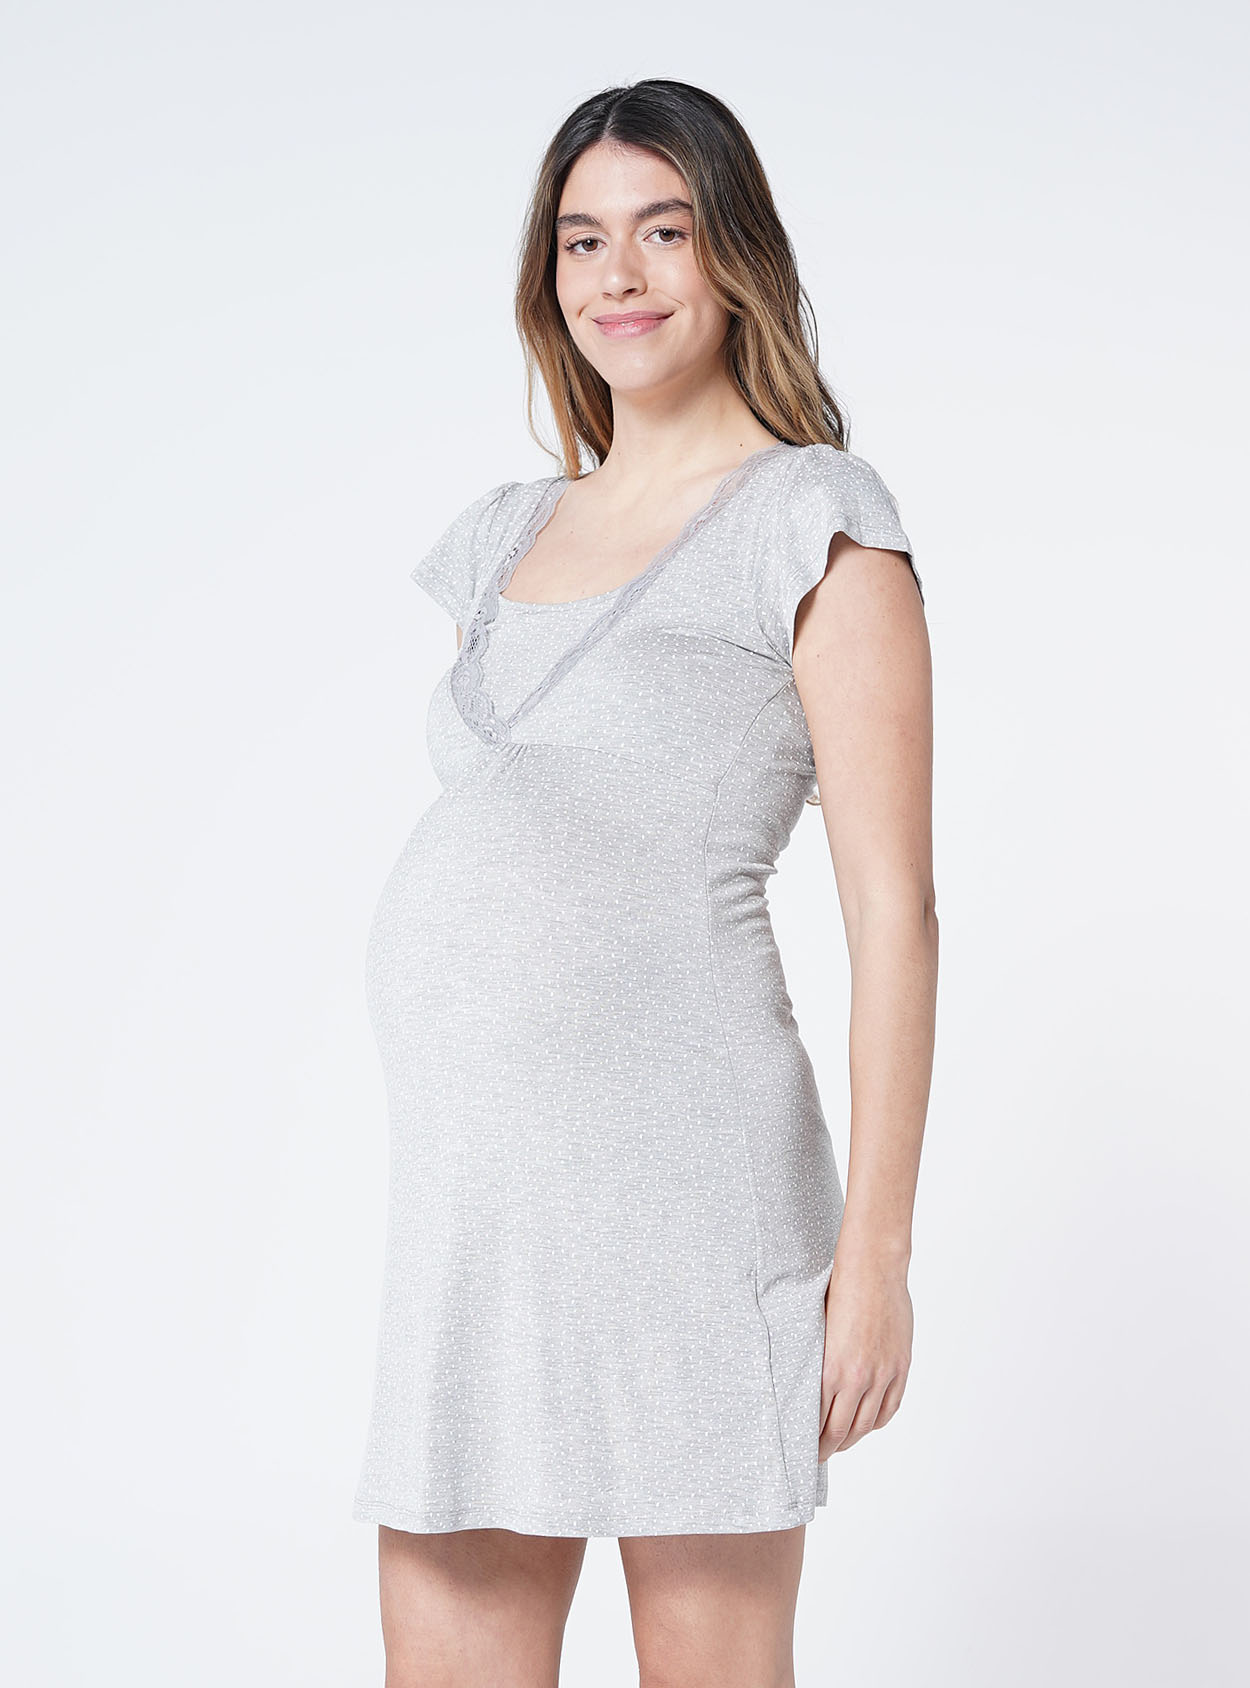 Camisón lactancia manga con topos – Ohma! Maternitywear